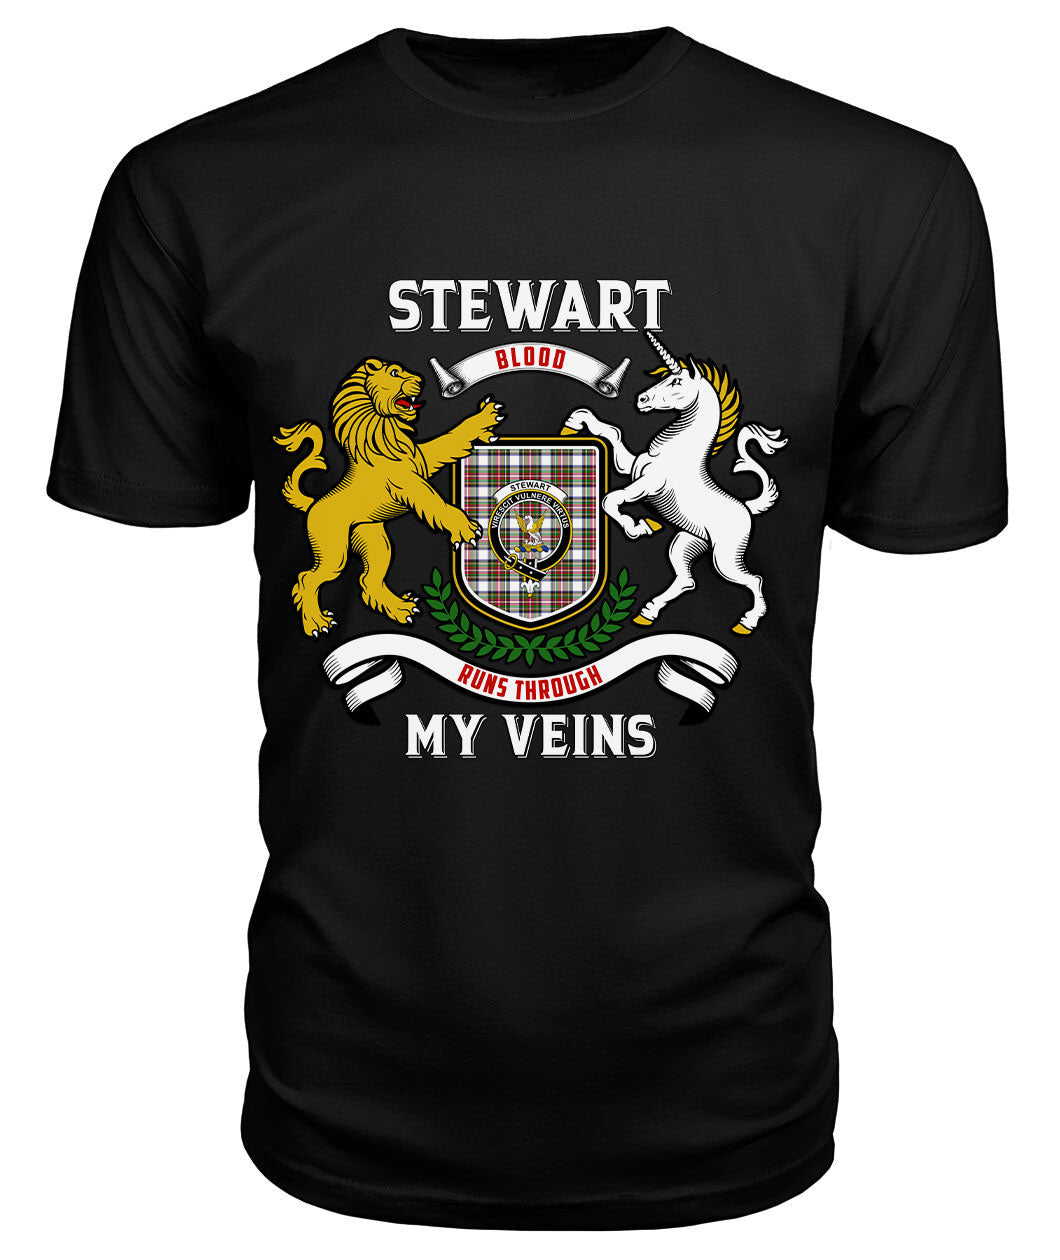 Stewart Dress Modern Tartan Crest 2D T-shirt - Blood Runs Through My Veins Style